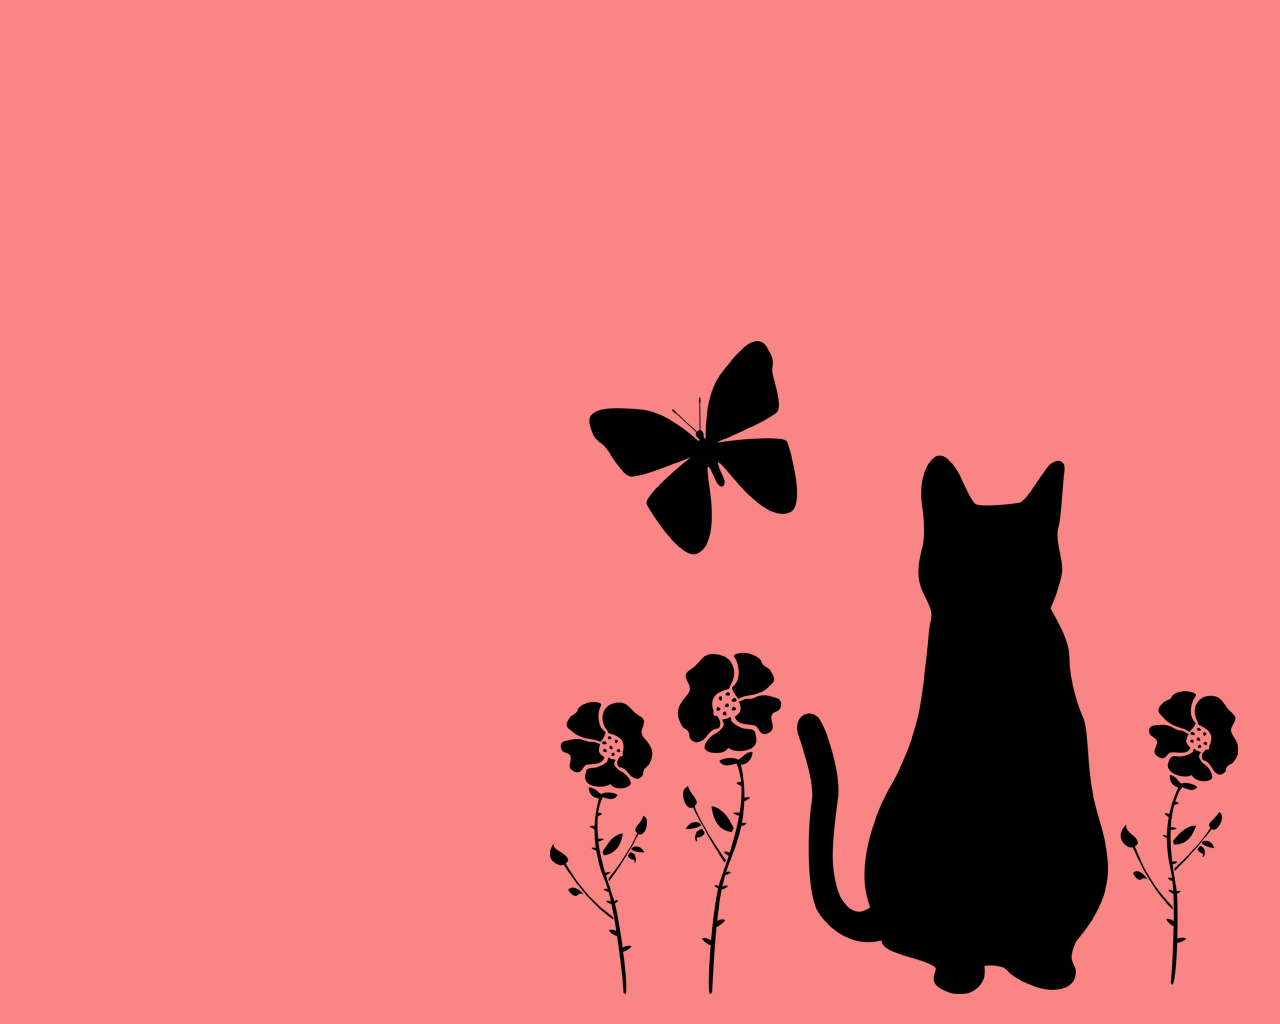 猫壁紙 猫と蝶と花と 黒シルエット1280 1024 商用利用可 無料 猫素材 猫イラスト にゃいちもん